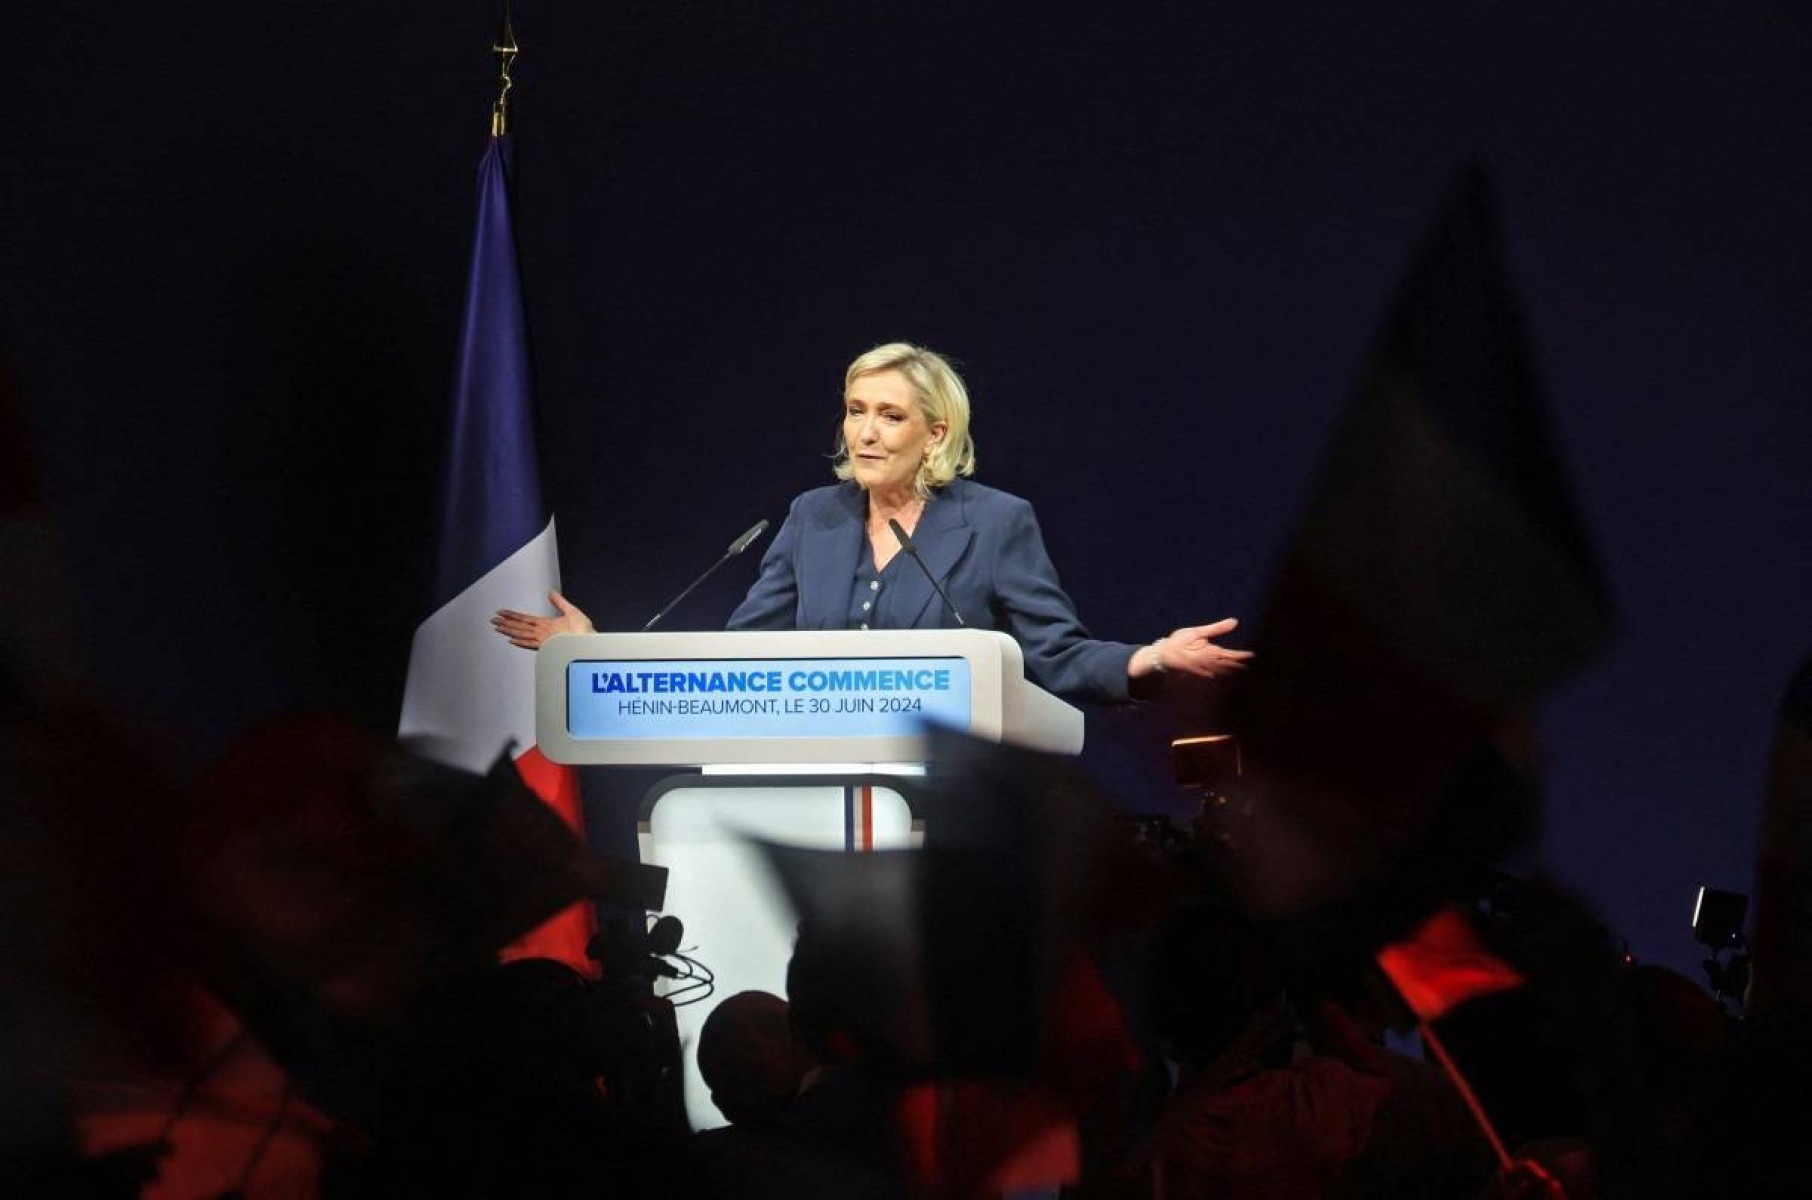 França: Ultradireita dispara nas eleições e Macron pede aliança democrática